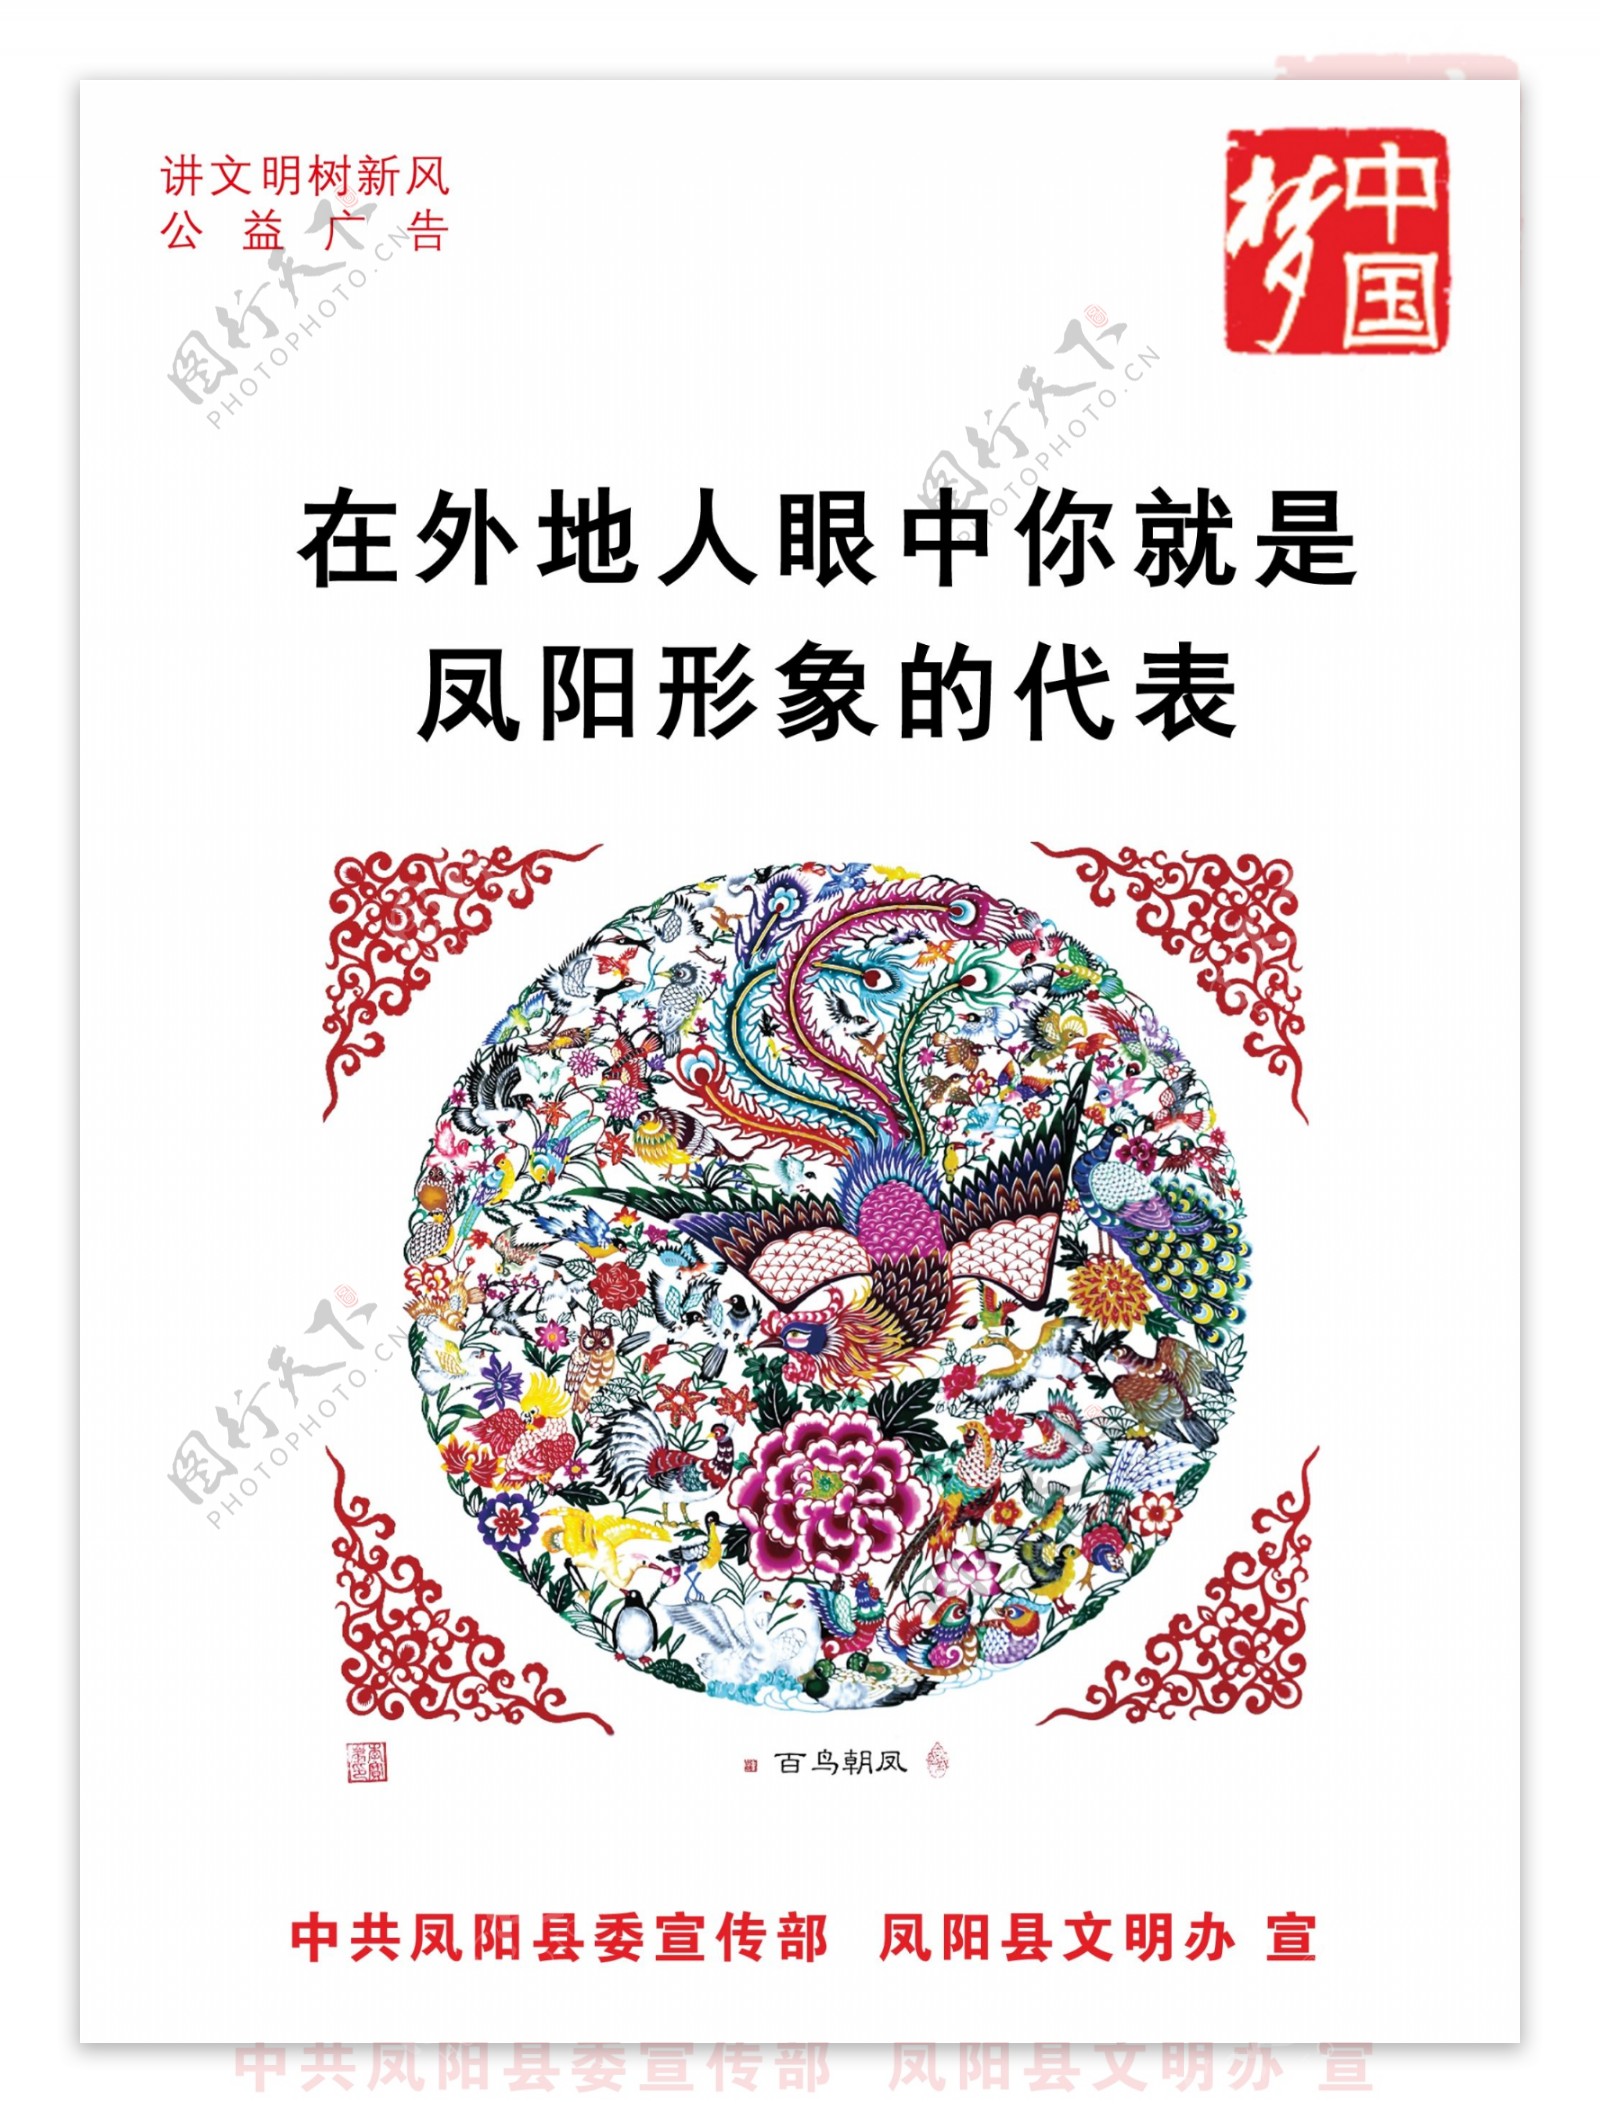 中国梦海报图片